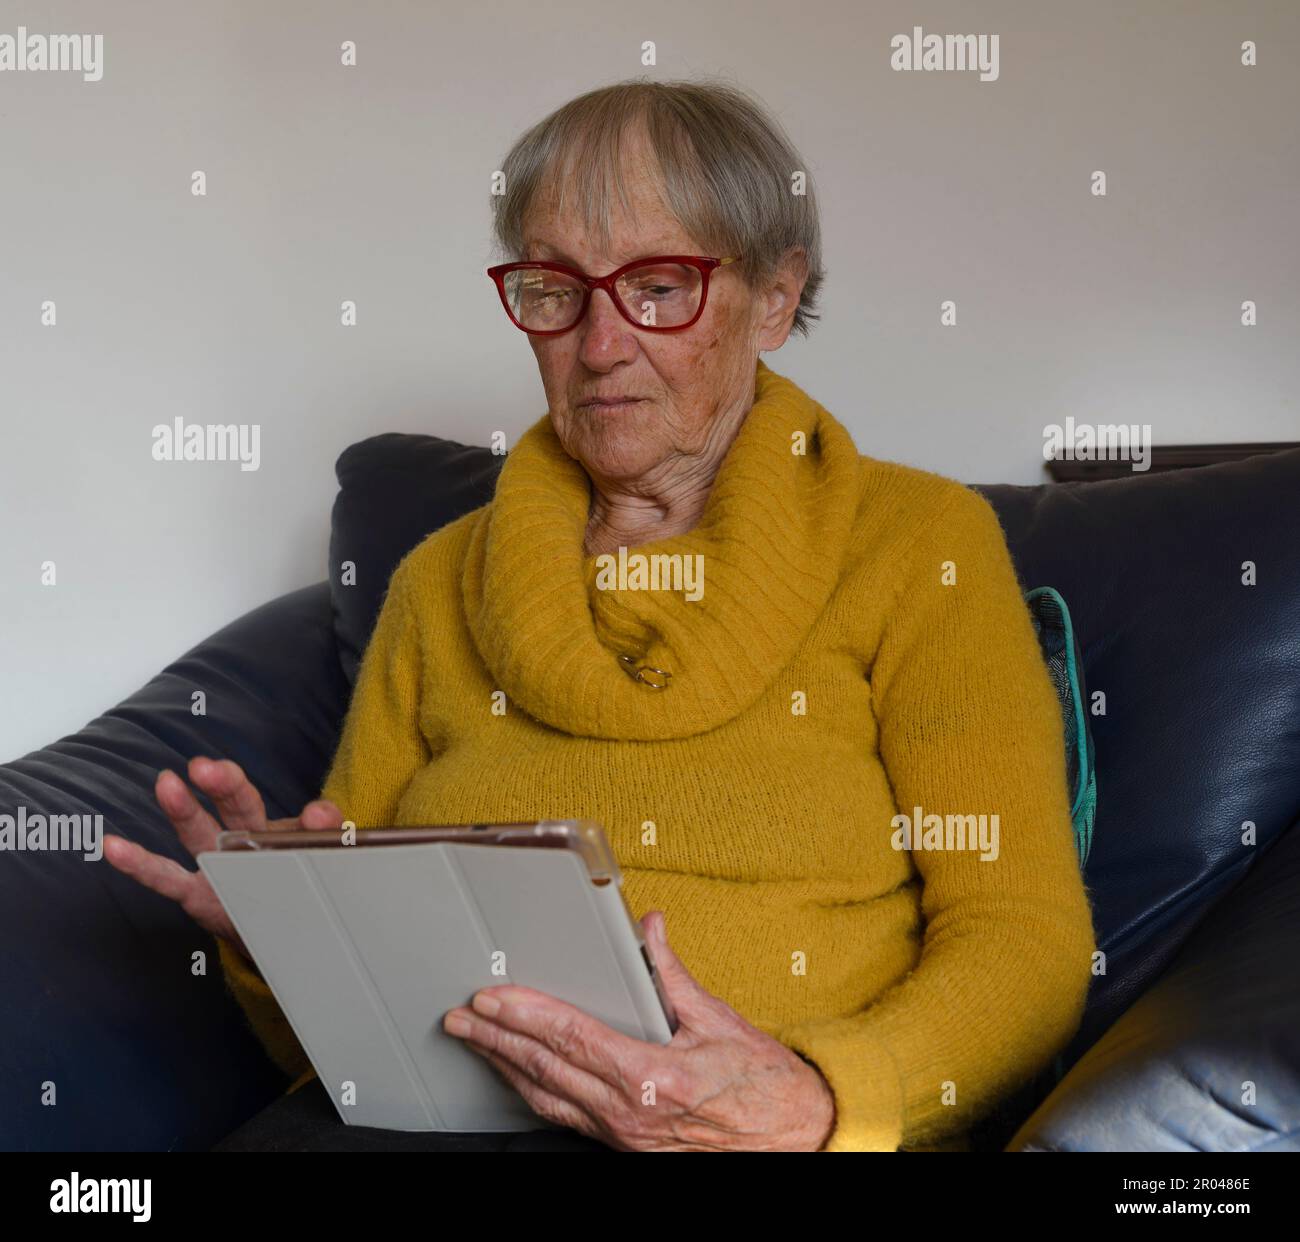 Alte, reife Seniorin, die ein digitales Tablet benutzt und auf den Computer schaut. Virtuelle Anrufe, Online-Meetings, Fernsehen, E-Books lesen, Zeit mit Tec verbringen Stockfoto